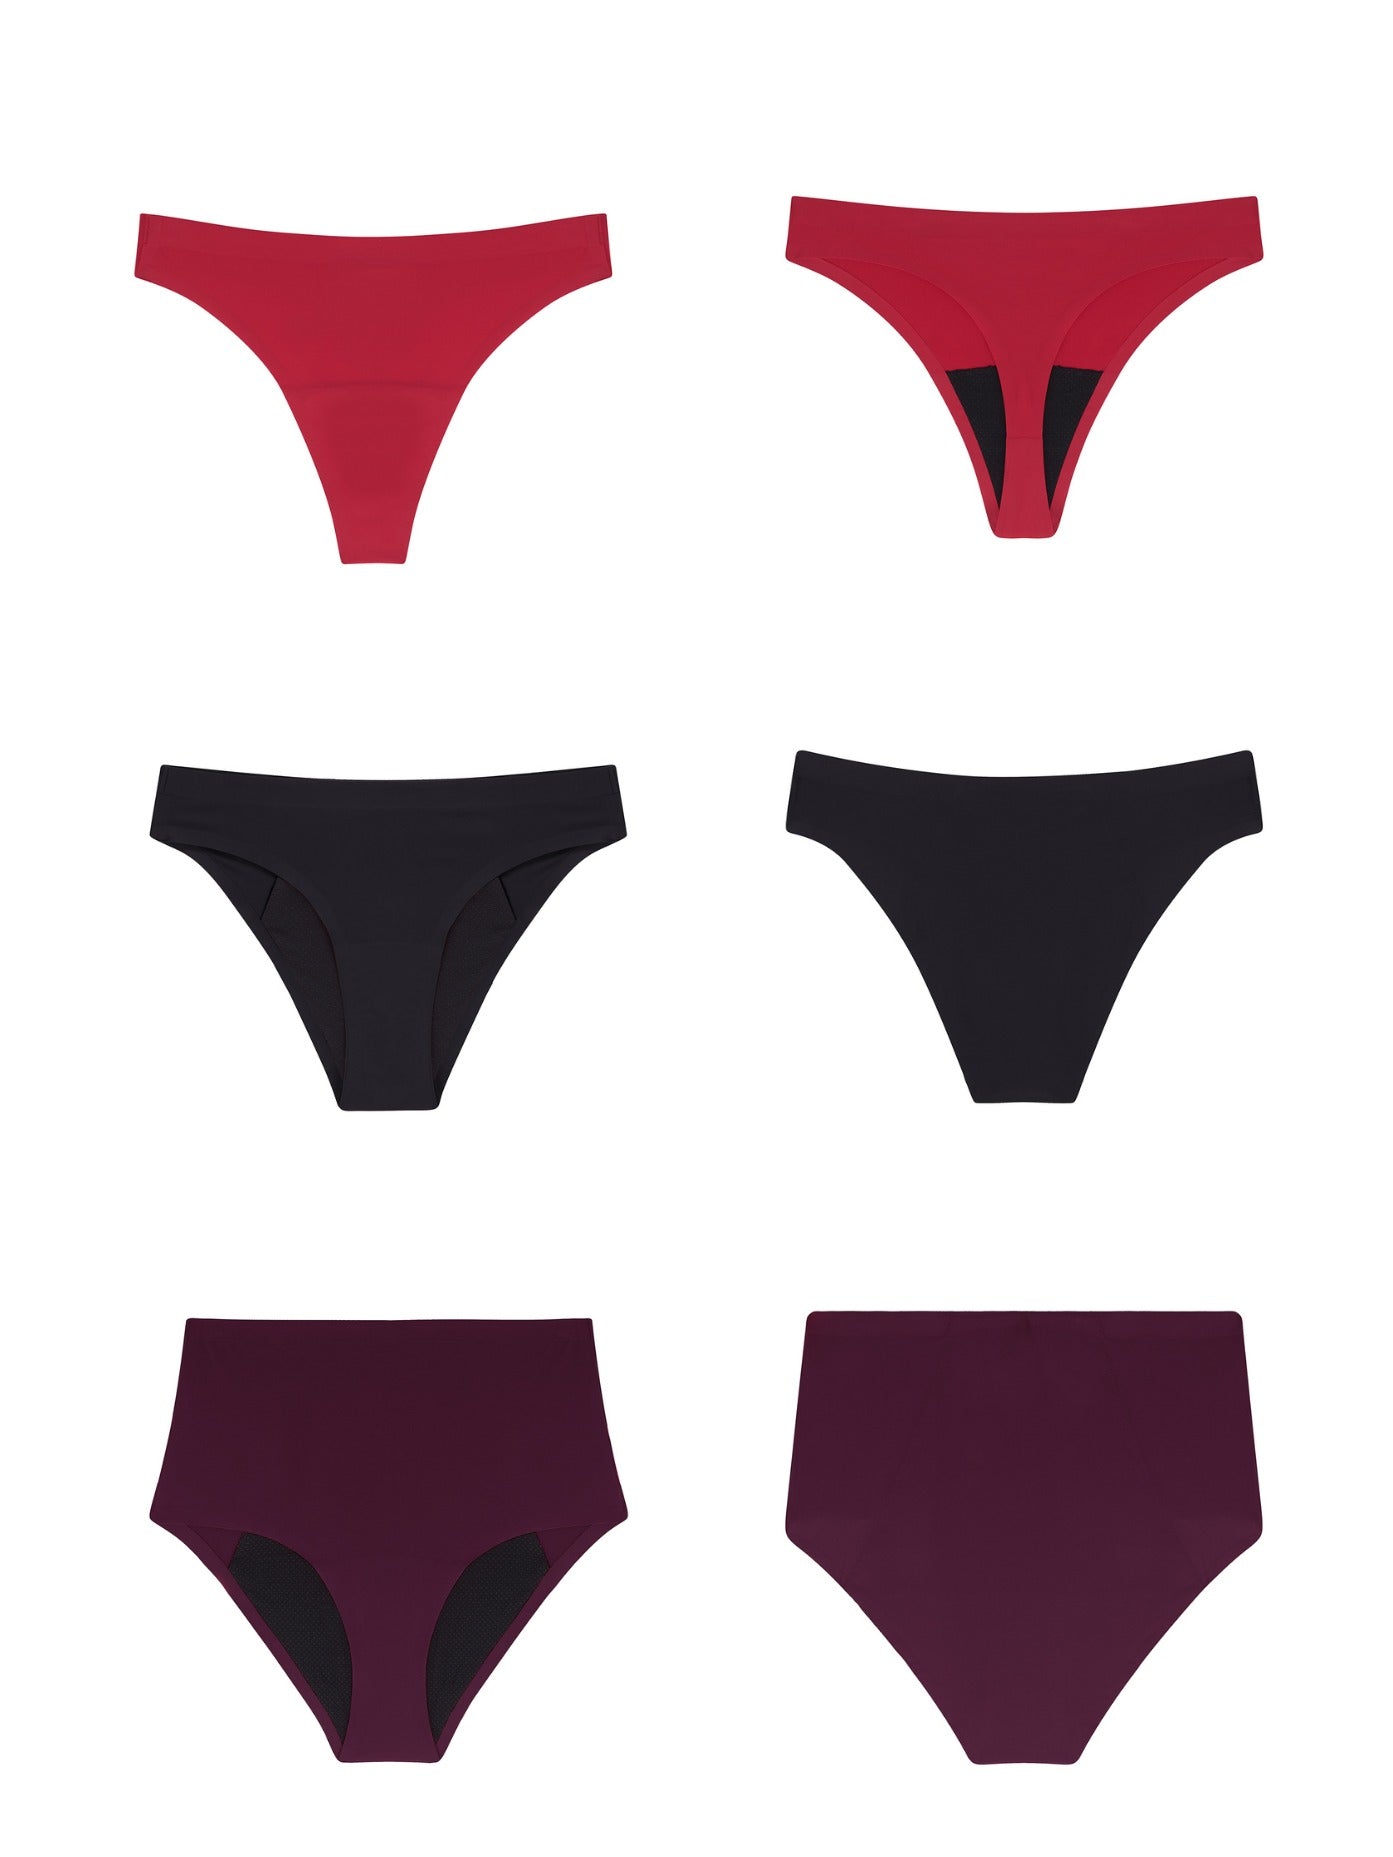 Flow Period Underwear Bundle (3 pieces)